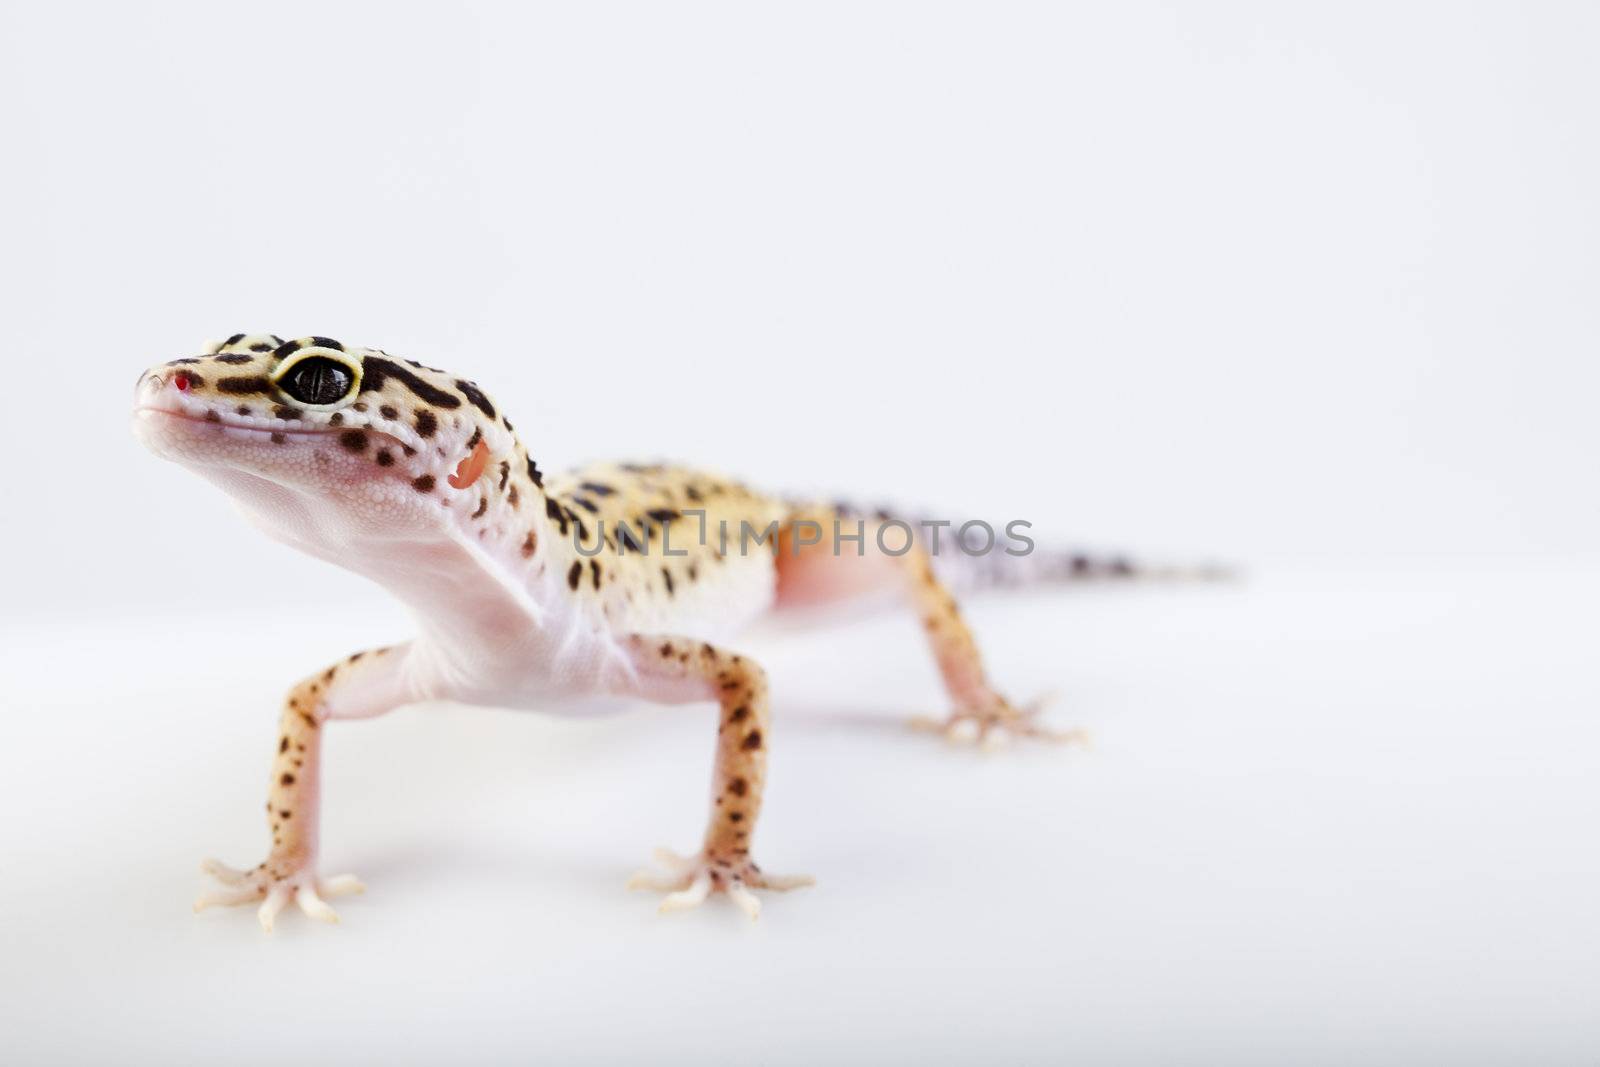 Gecko in a white background by JanPietruszka